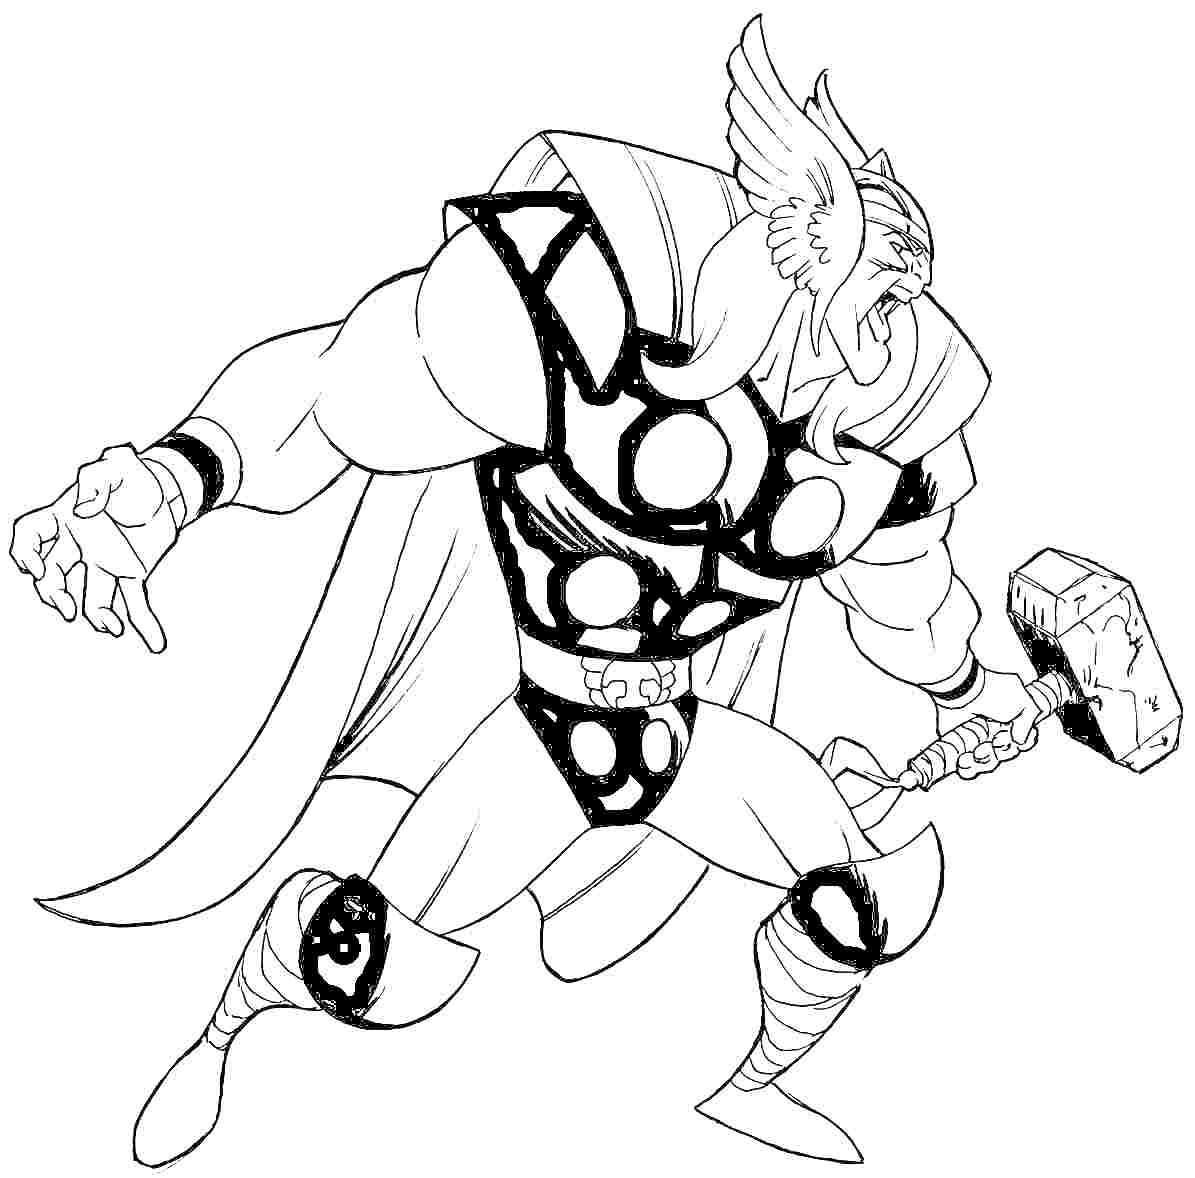 Тор с молотом Mjölnir, в шлеме с крыльями, плаще и броне